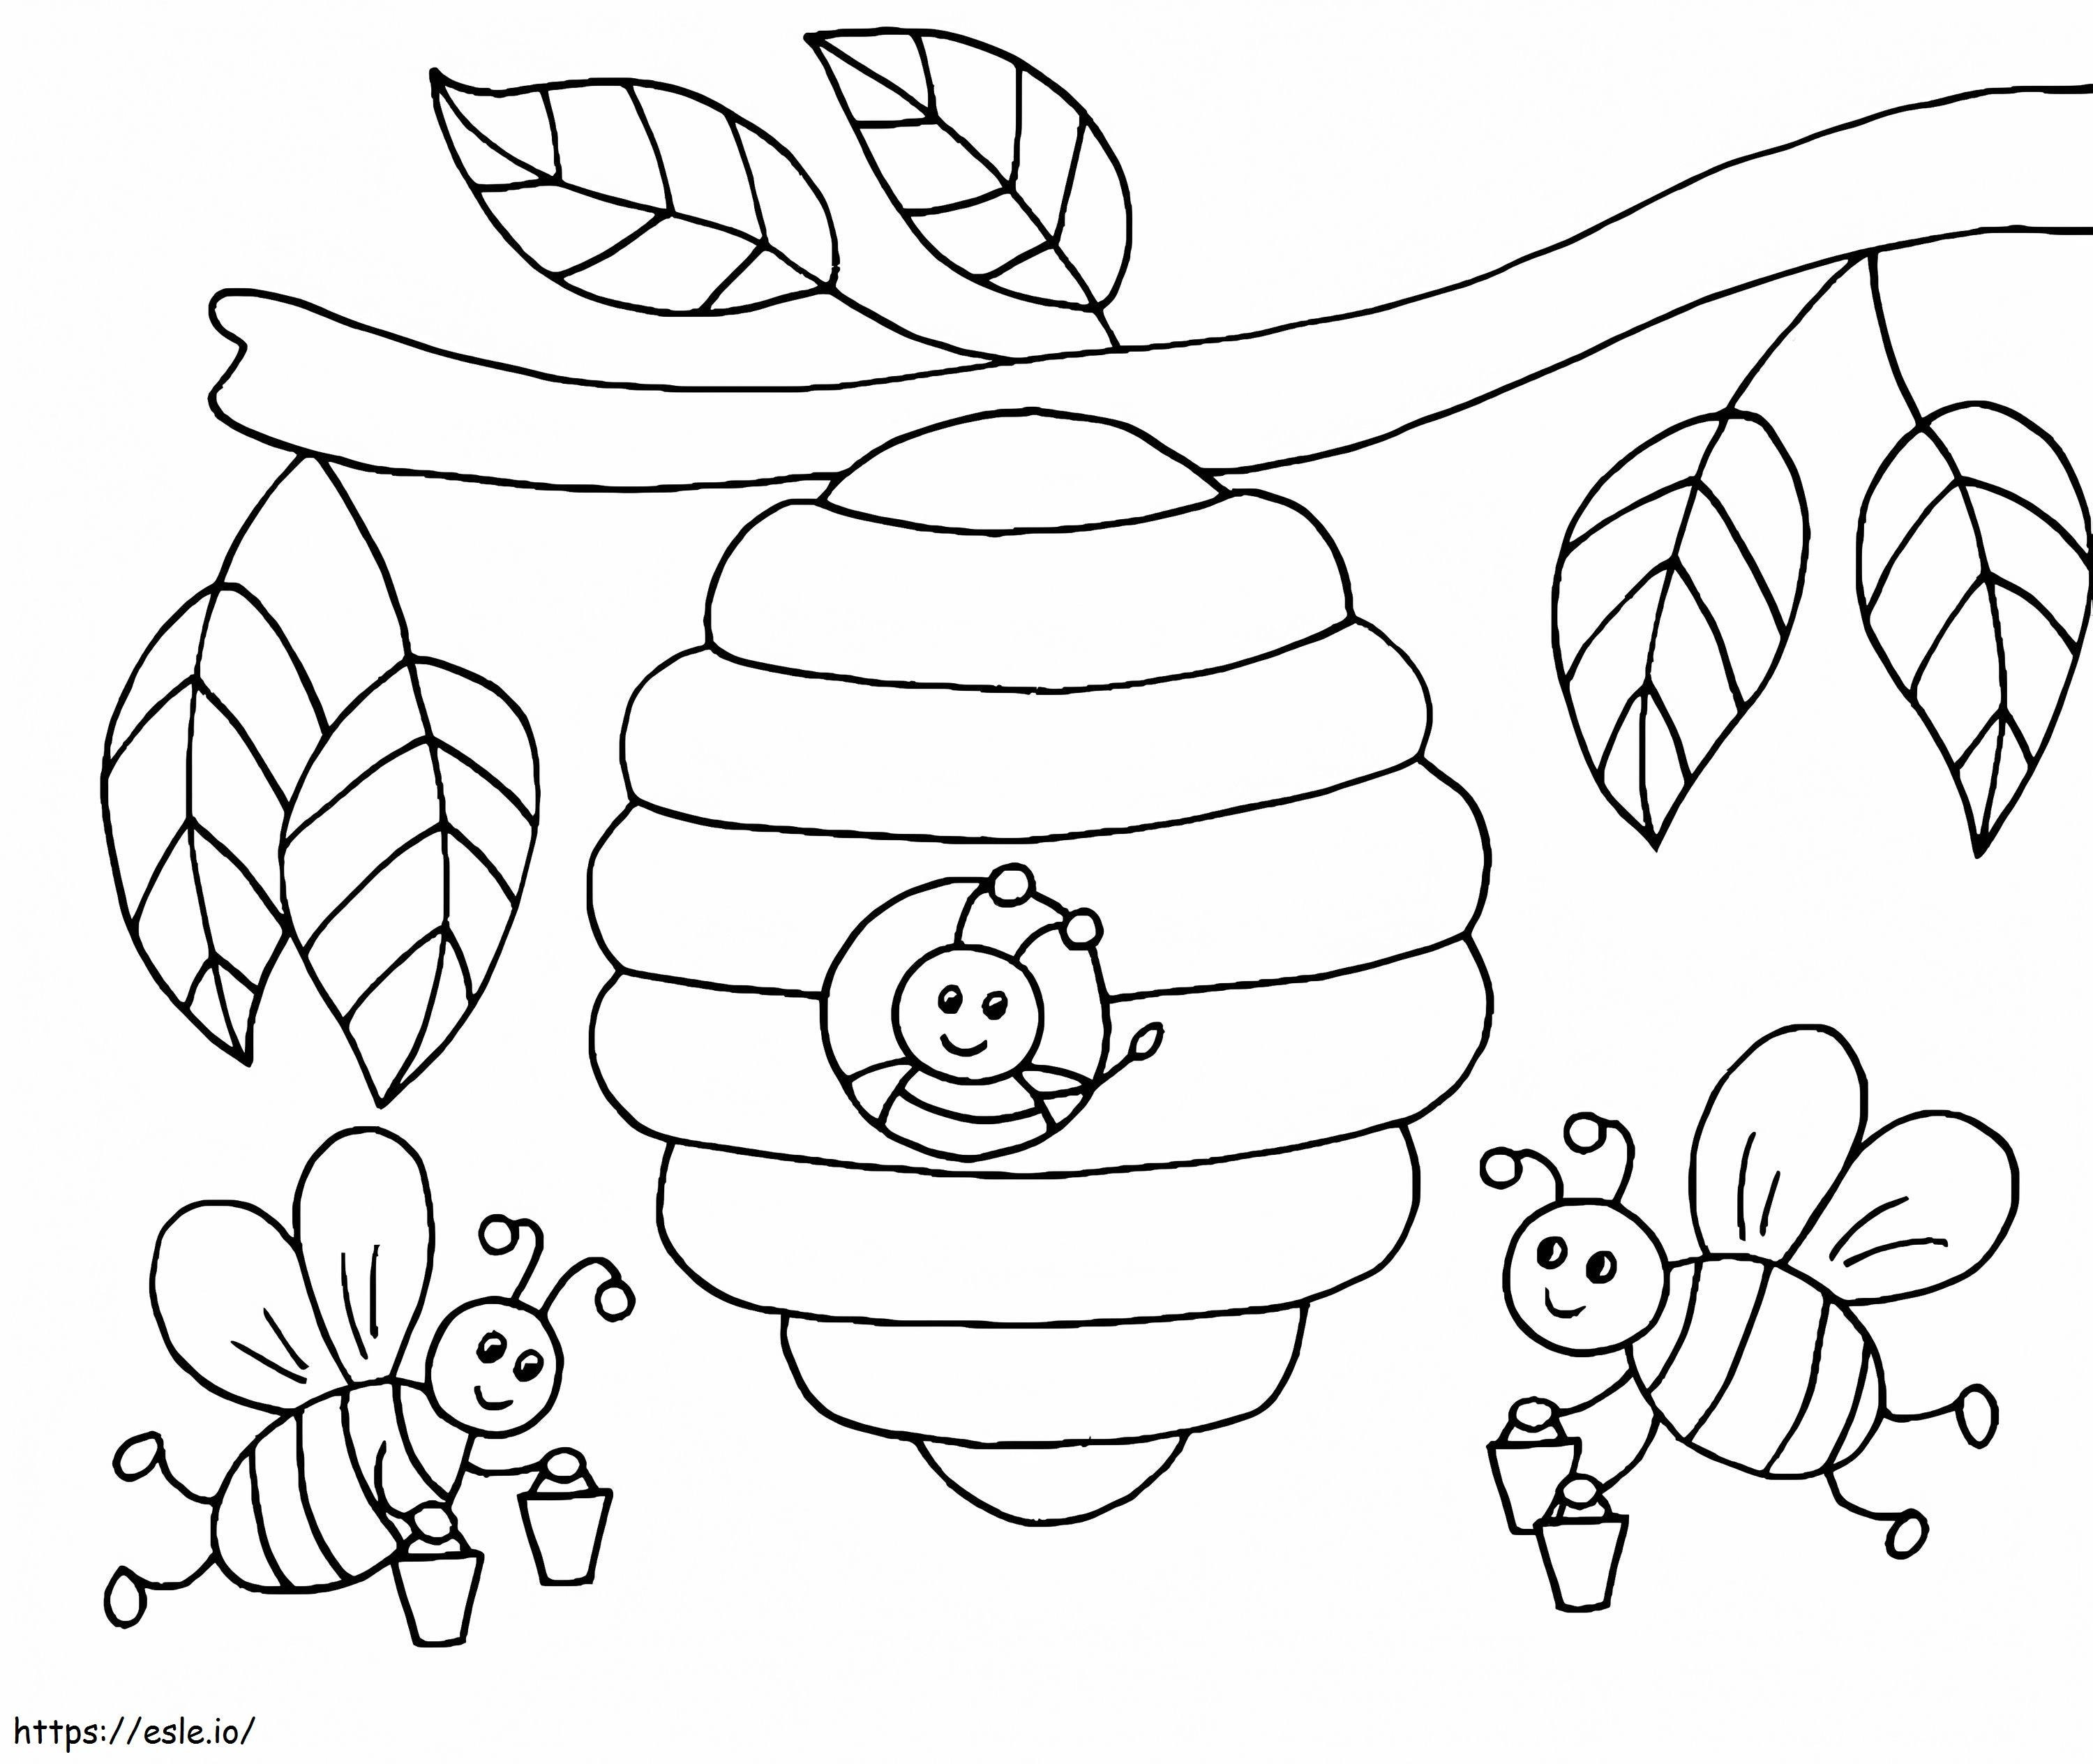 Pszczoły Z Ula Na Drzewie kolorowanka